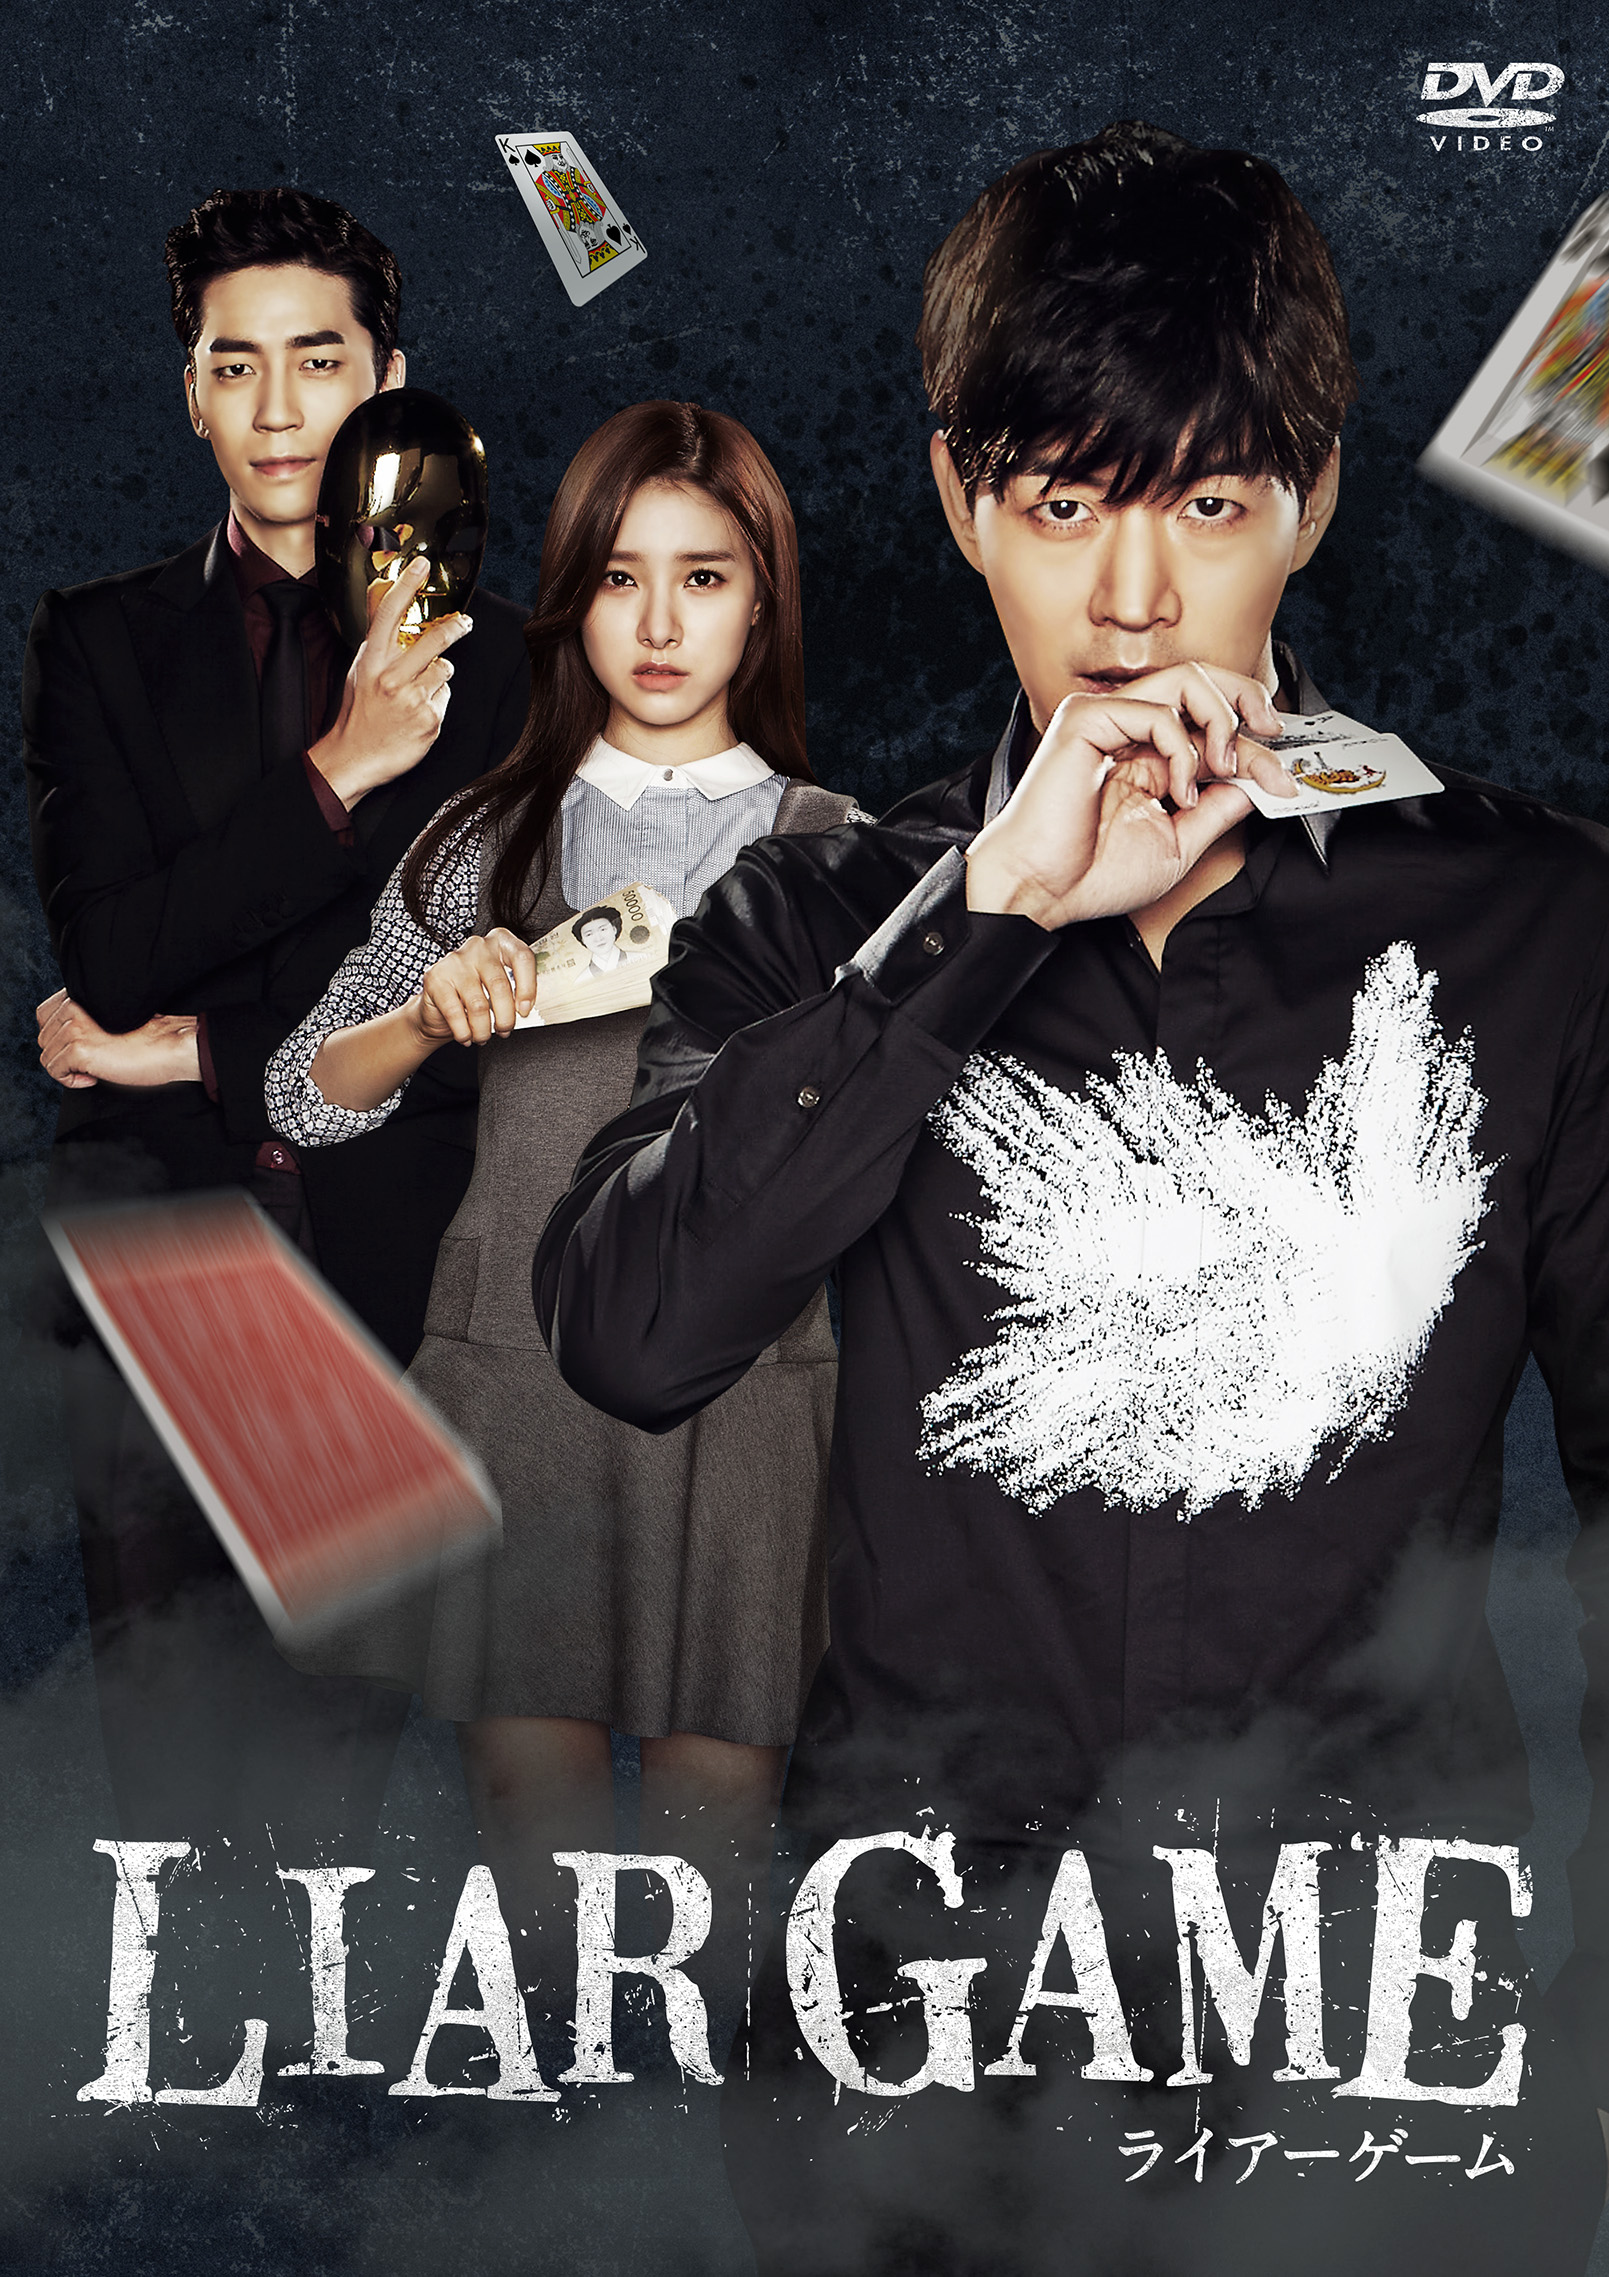 韓国版 Liar Game ライアーゲーム Dvdが5 3 火 リリース 4 14 木 Bsフジにて放送決定 予告編をkstyle独占先行公開 Kstyle